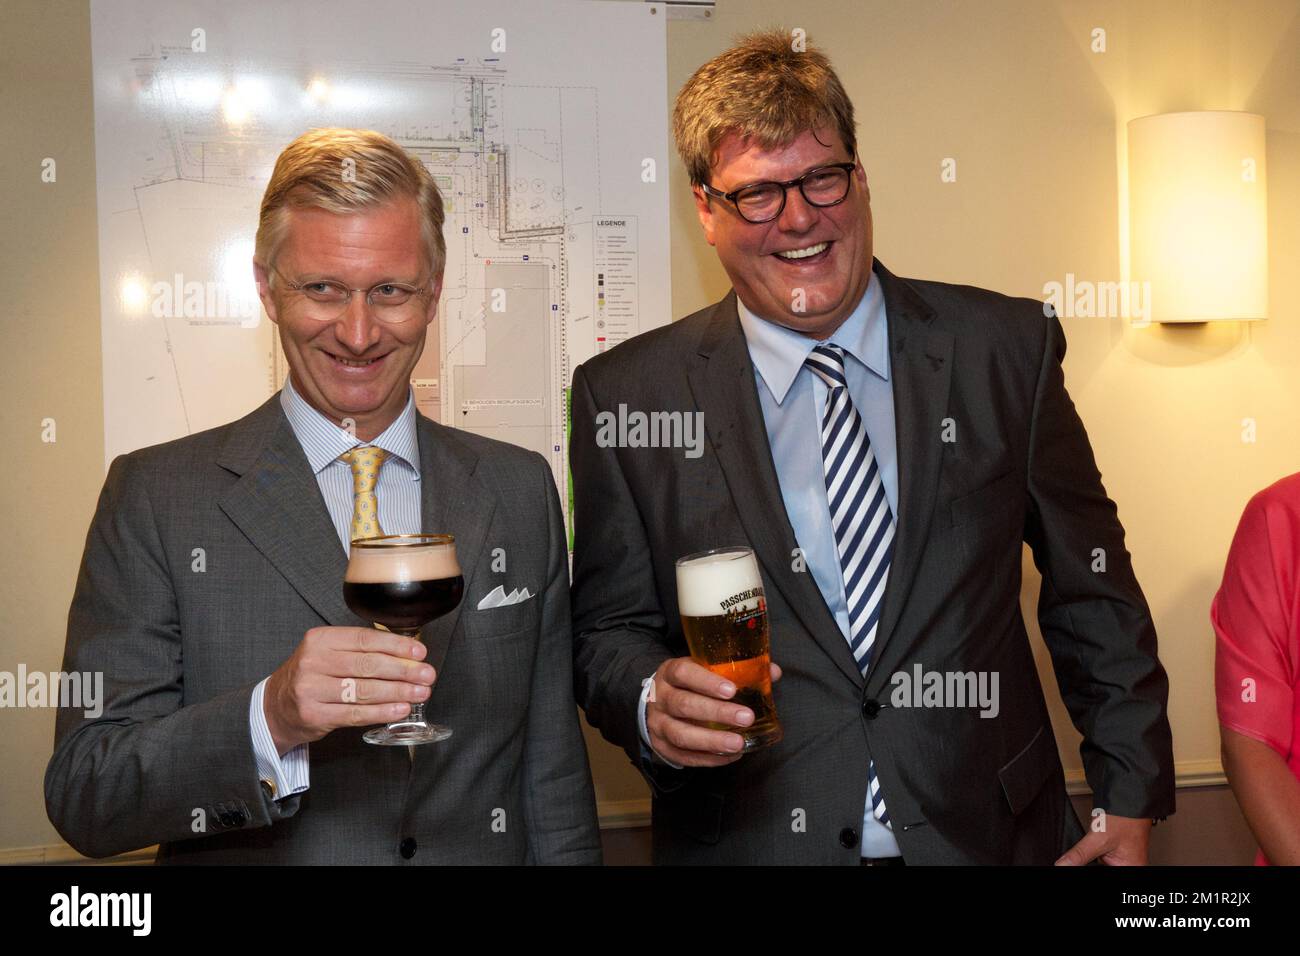 20130620 - INGELMUNSTER, BELGIUM: Crown Prince Philippe of Belgium and  Xavier Van Honsebrouck drink a beer during a royal visit to the 'Brouwerij Van  Honsebrouck' brewery in Ingelmunster as a part of